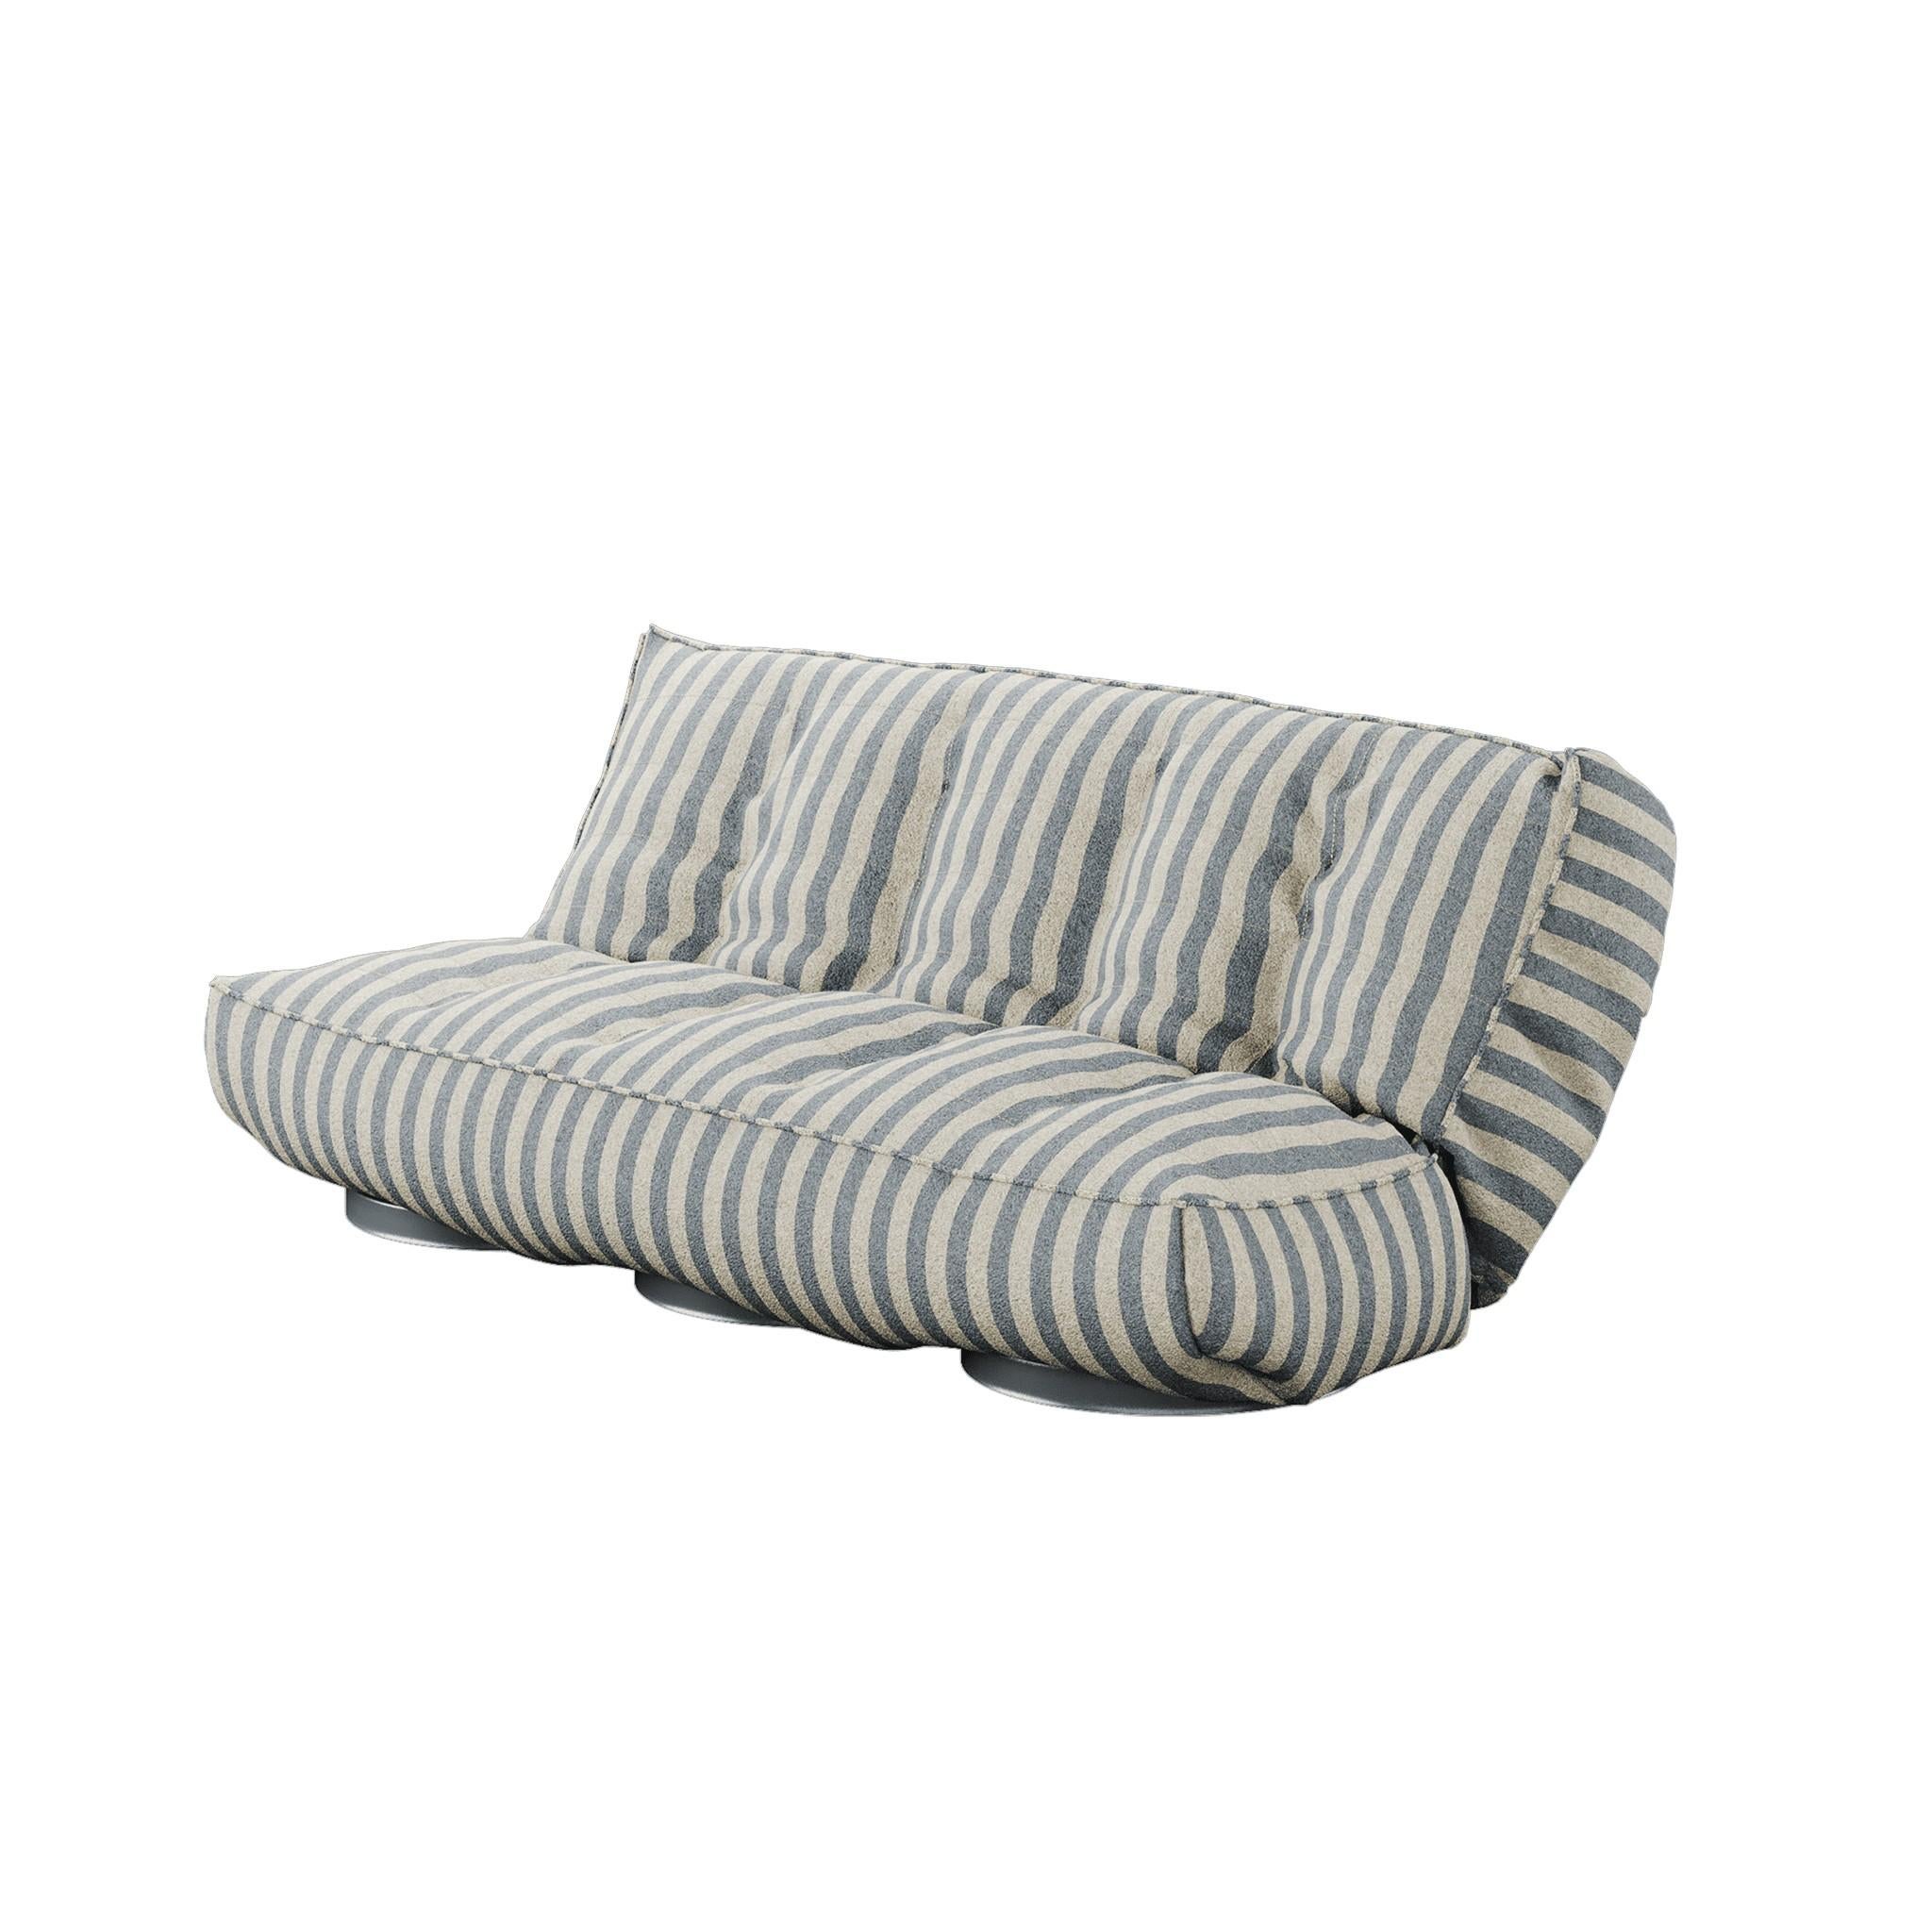 Foil Daybed est un lit de jour de luxe. Vous êtes à la recherche d'un canapé moderne dont le design ne se démodera pas avec le temps ? Vous l'avez trouvé. La structure ergonomique et les détails délicats de Foil le rendent confortable, luxueux et